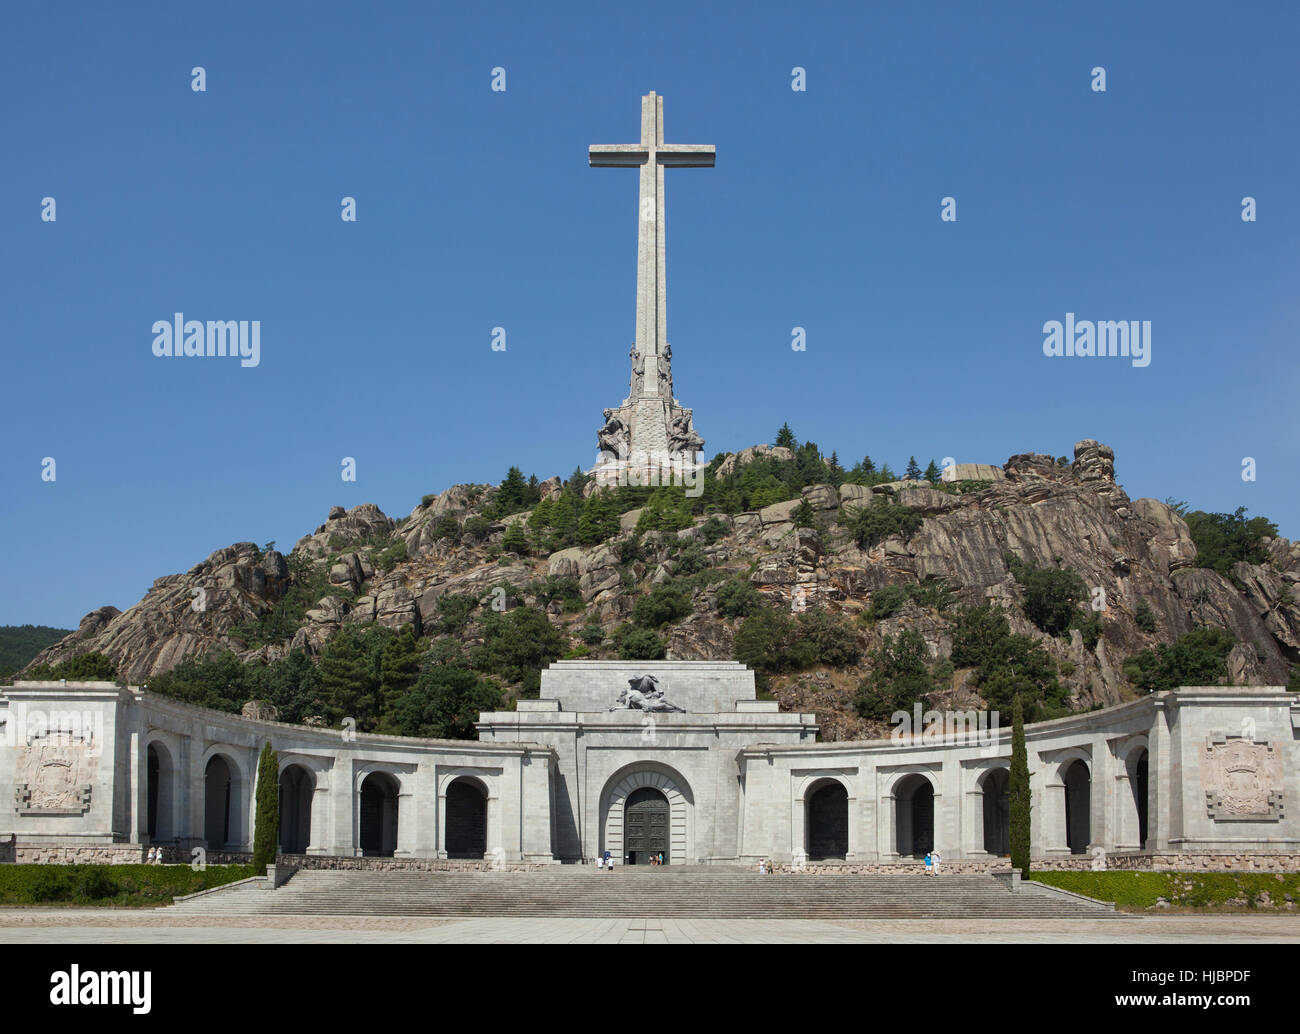 La Santa Cruz sobre la entrada principal de la Basílica de la Santa Cruz (Basílica de la Santa Cruz) en el Valle de los Caidos (Valle de los Caídos), cerca de Madrid, España. Foto de stock